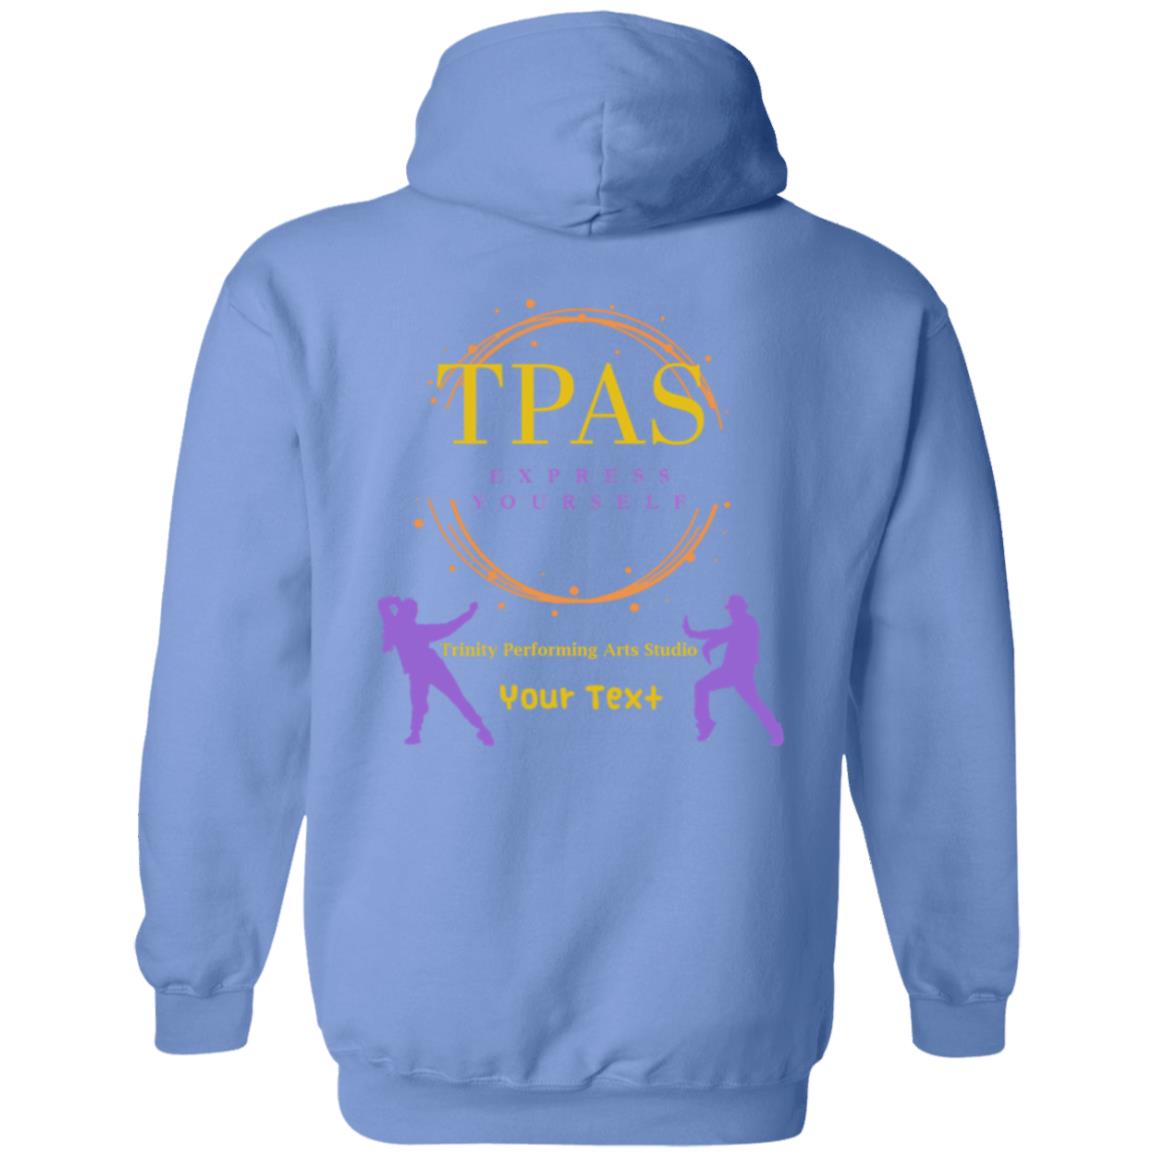 TPAS Zip Up Hooded Sweatshirt